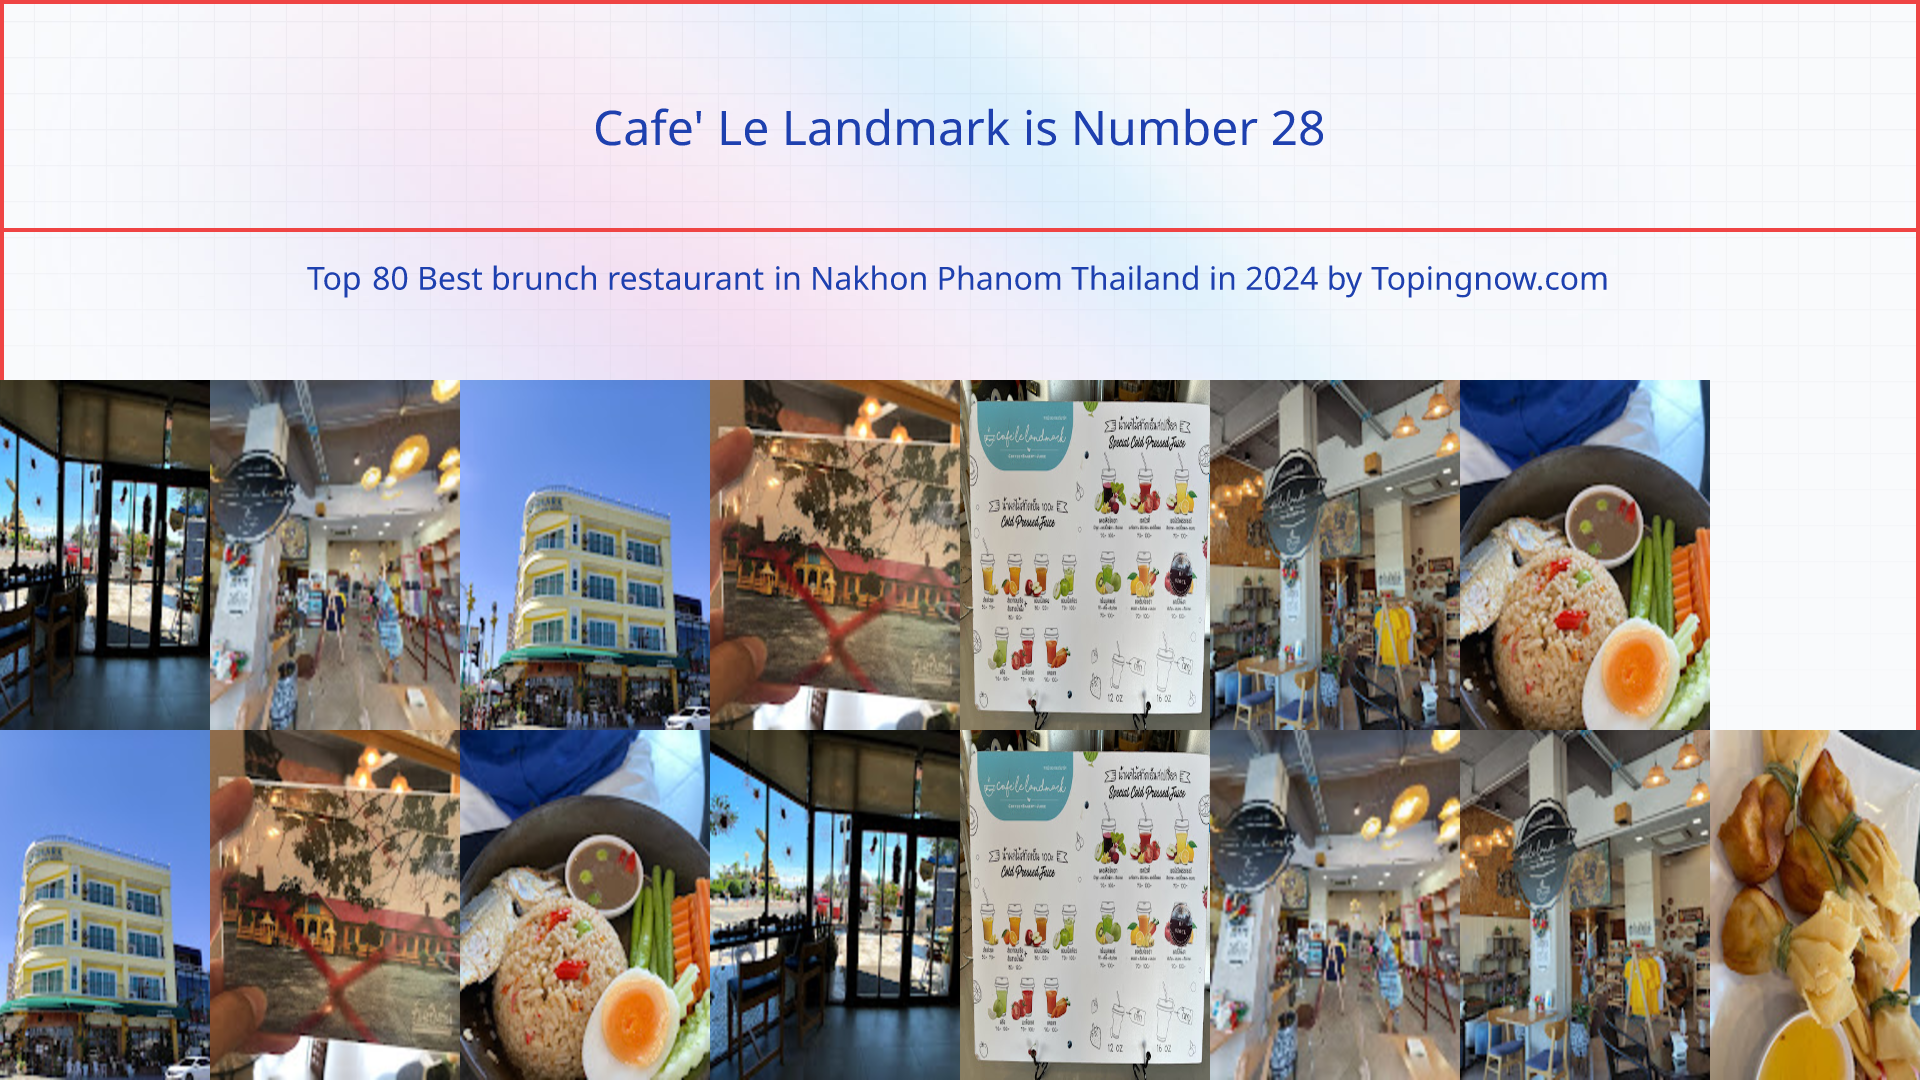 Cafe' Le Landmark: Top 80 Best brunch restaurant in Nakhon Phanom Thailand in 2024